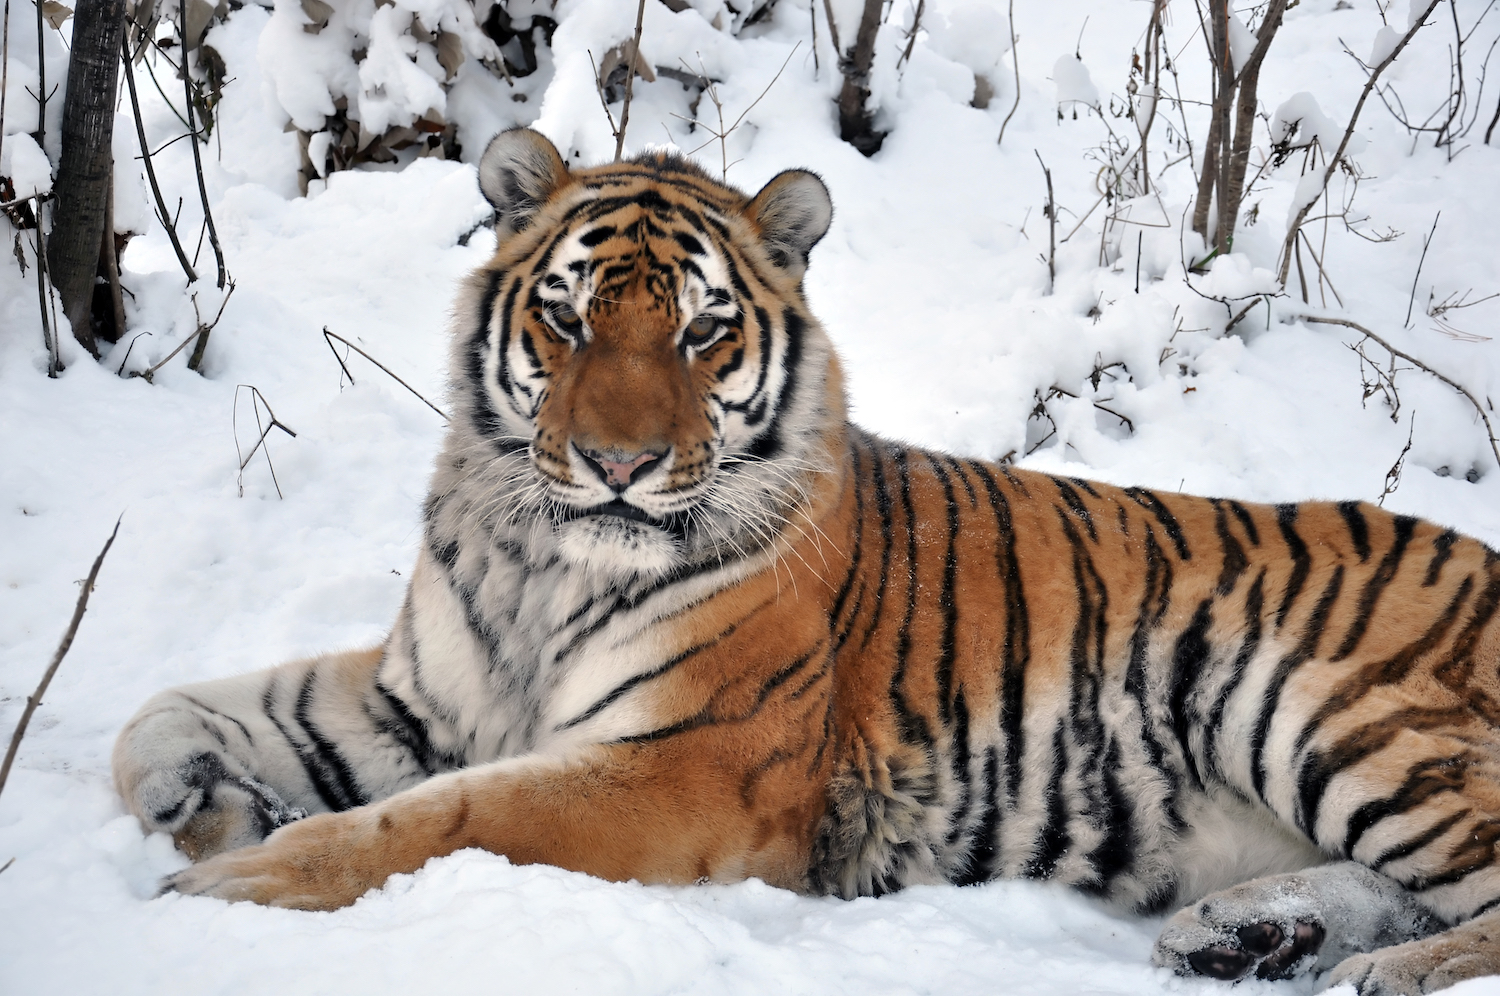 Центр «Амурский тигр» и Министерство природных ресурсов Хабаровского края подписали соглашение о сотрудничестве